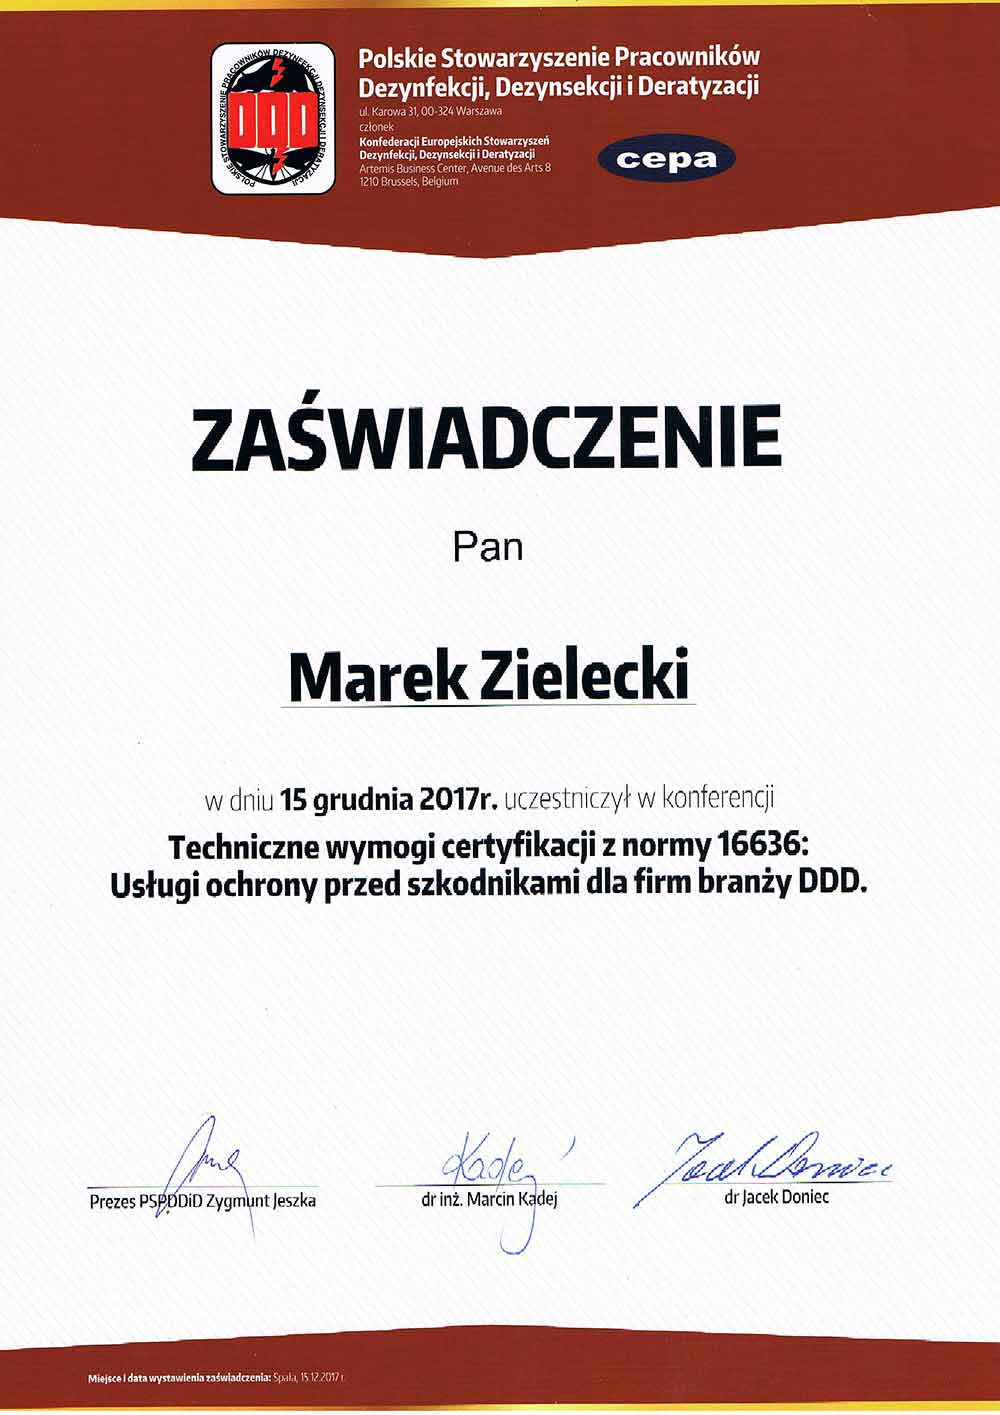 Marek Zielecki - Techniczne wymogi certyfikacji z normy 16636: Usługi ochrony przed szkodnikami dla firm branży DDD